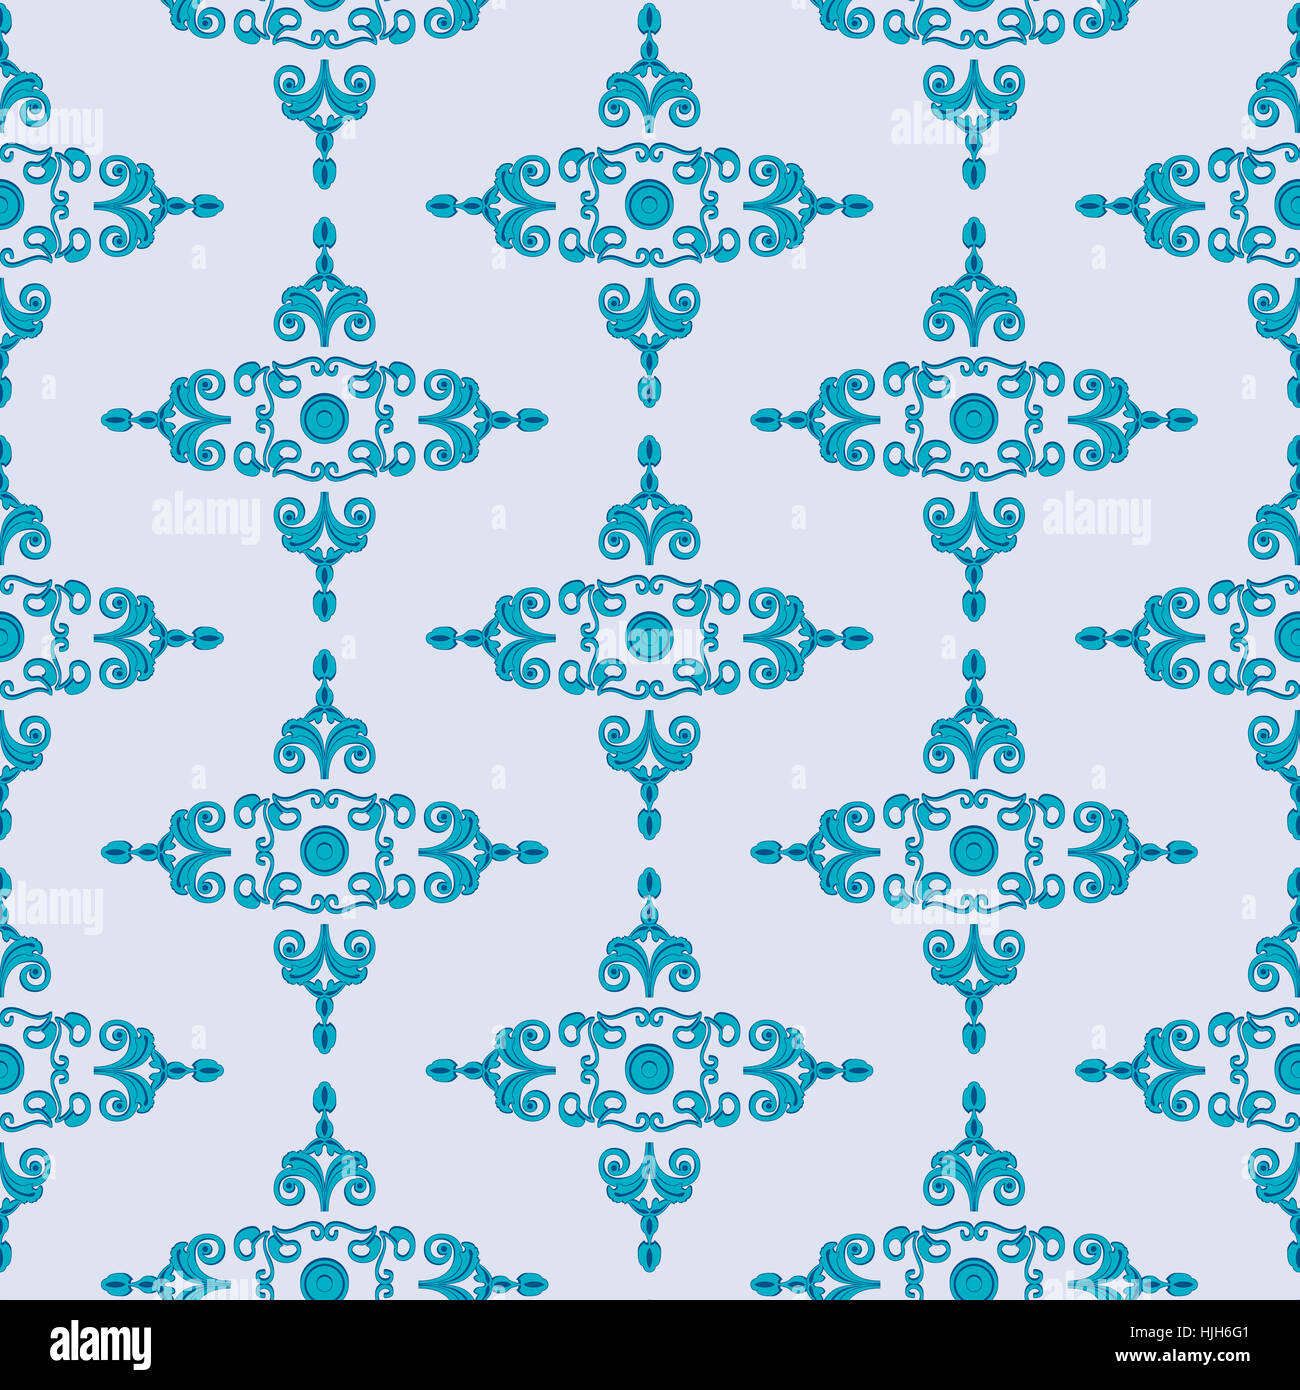 Textur in blautšnen mit Mustern nach Mšbeln im Gruenderstil (Historismus) 1890, als Muster angelegte frei skalierbare Vektorgrafik im ai/eps-Format. Stock Photo